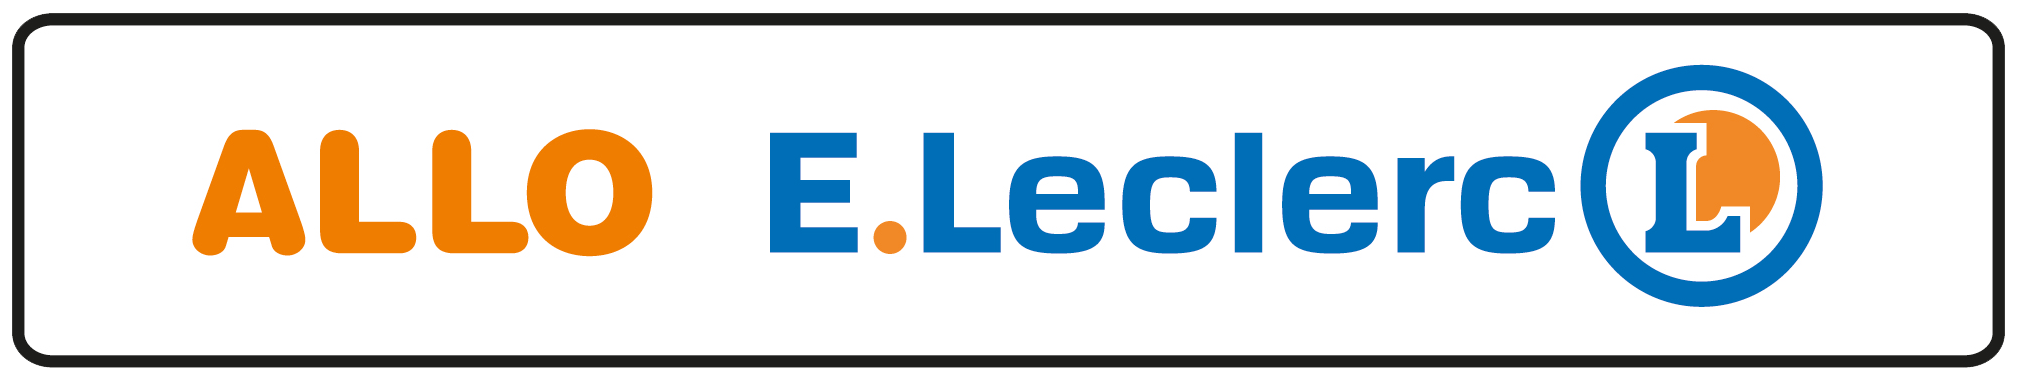 Logo Allo Leclerc